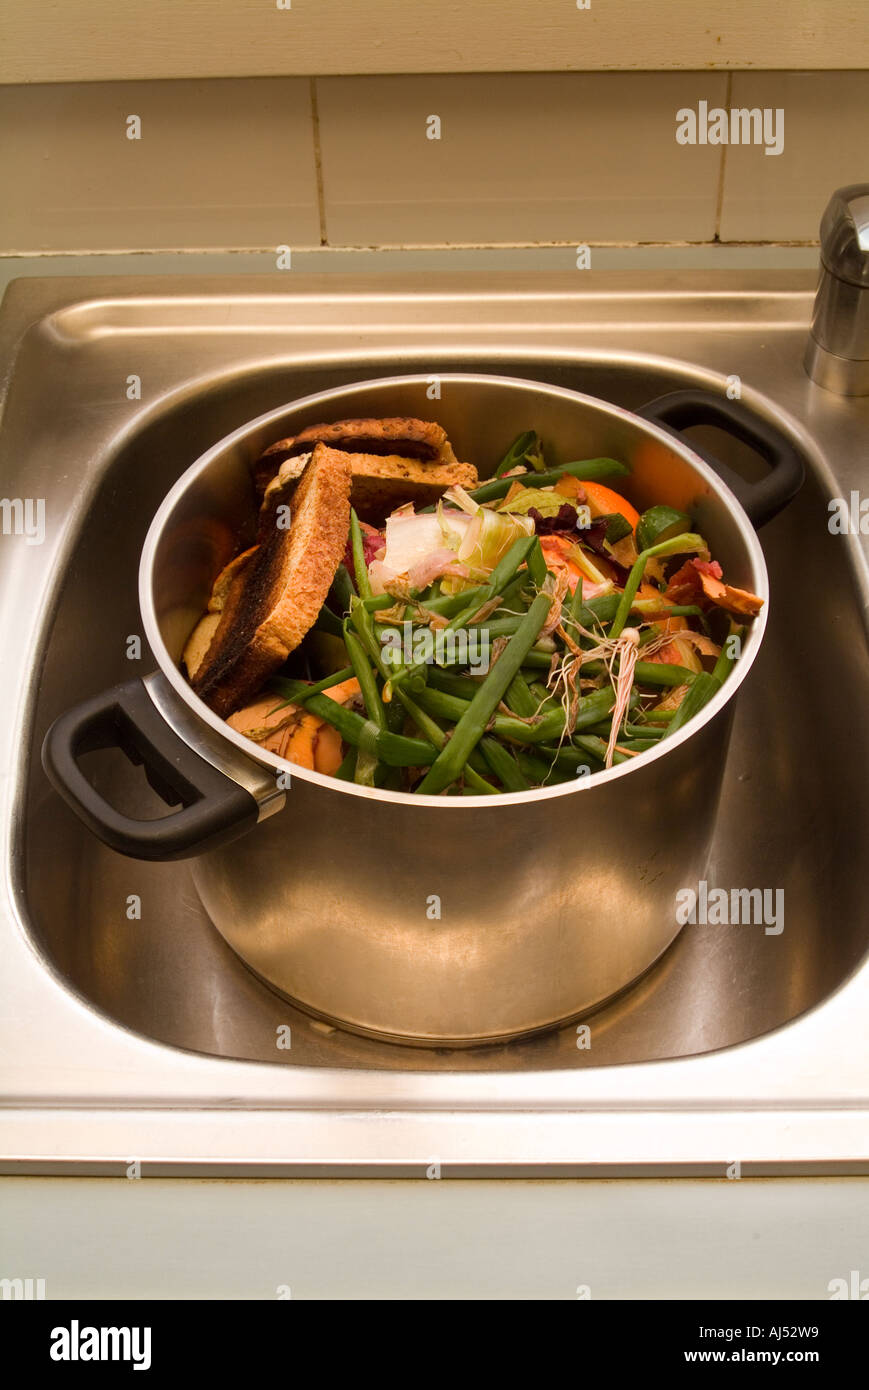 Una miscela di scarti da cucina in una pentola per il compostaggio, l'alimentazione di un allevamento di vermi o per i polli Foto Stock